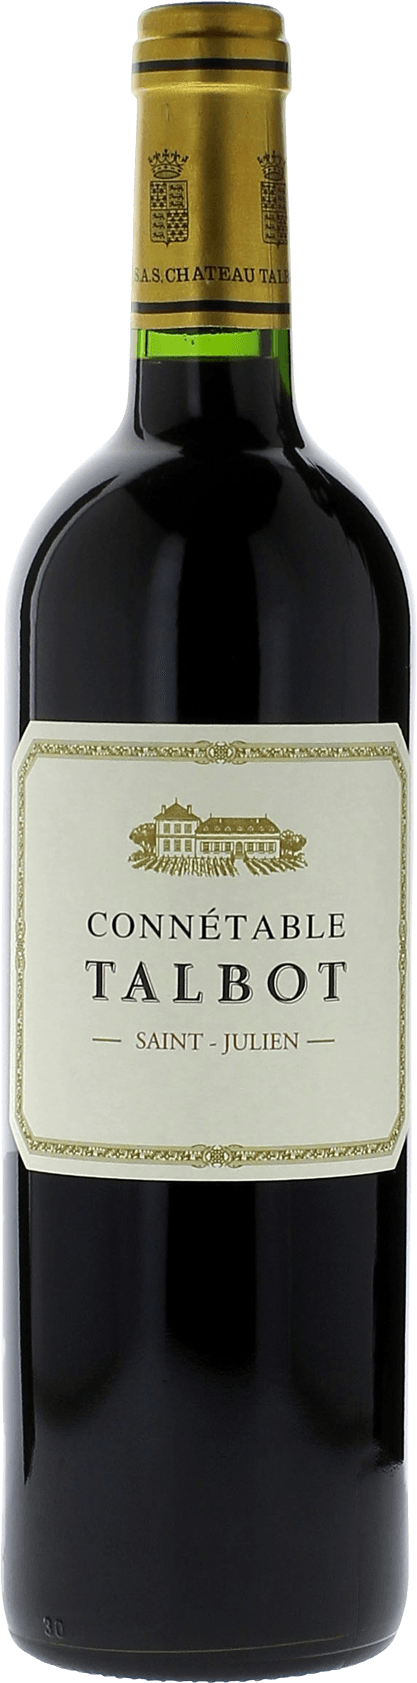 Connetable talbot 2008 2me vin de TALBOT Saint-Julien, Bordeaux rouge